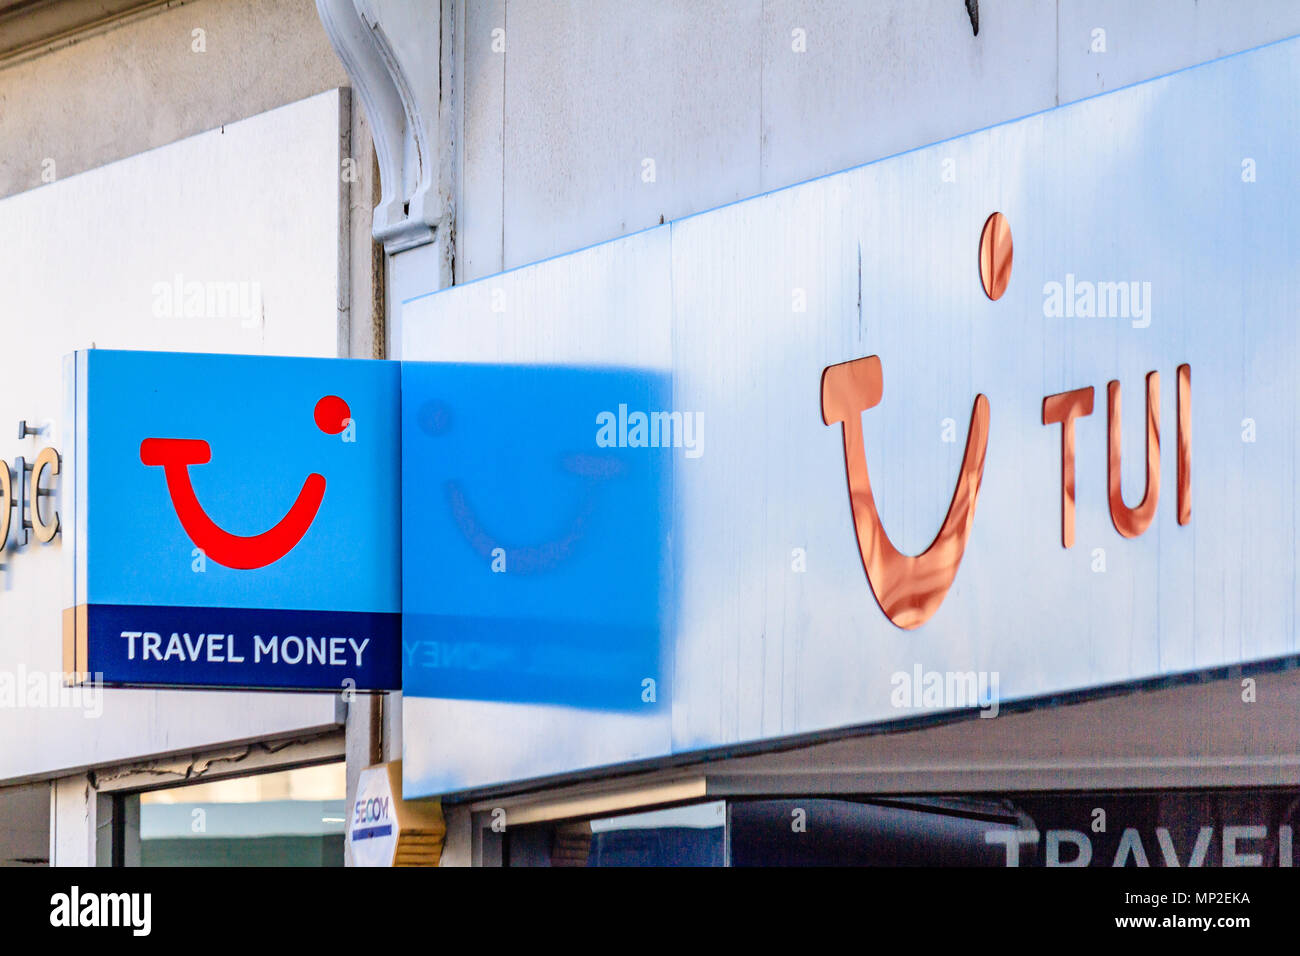 TUI Travel Money shop sign, Teignmouth, Devon. Feb 2018. Stock Photo